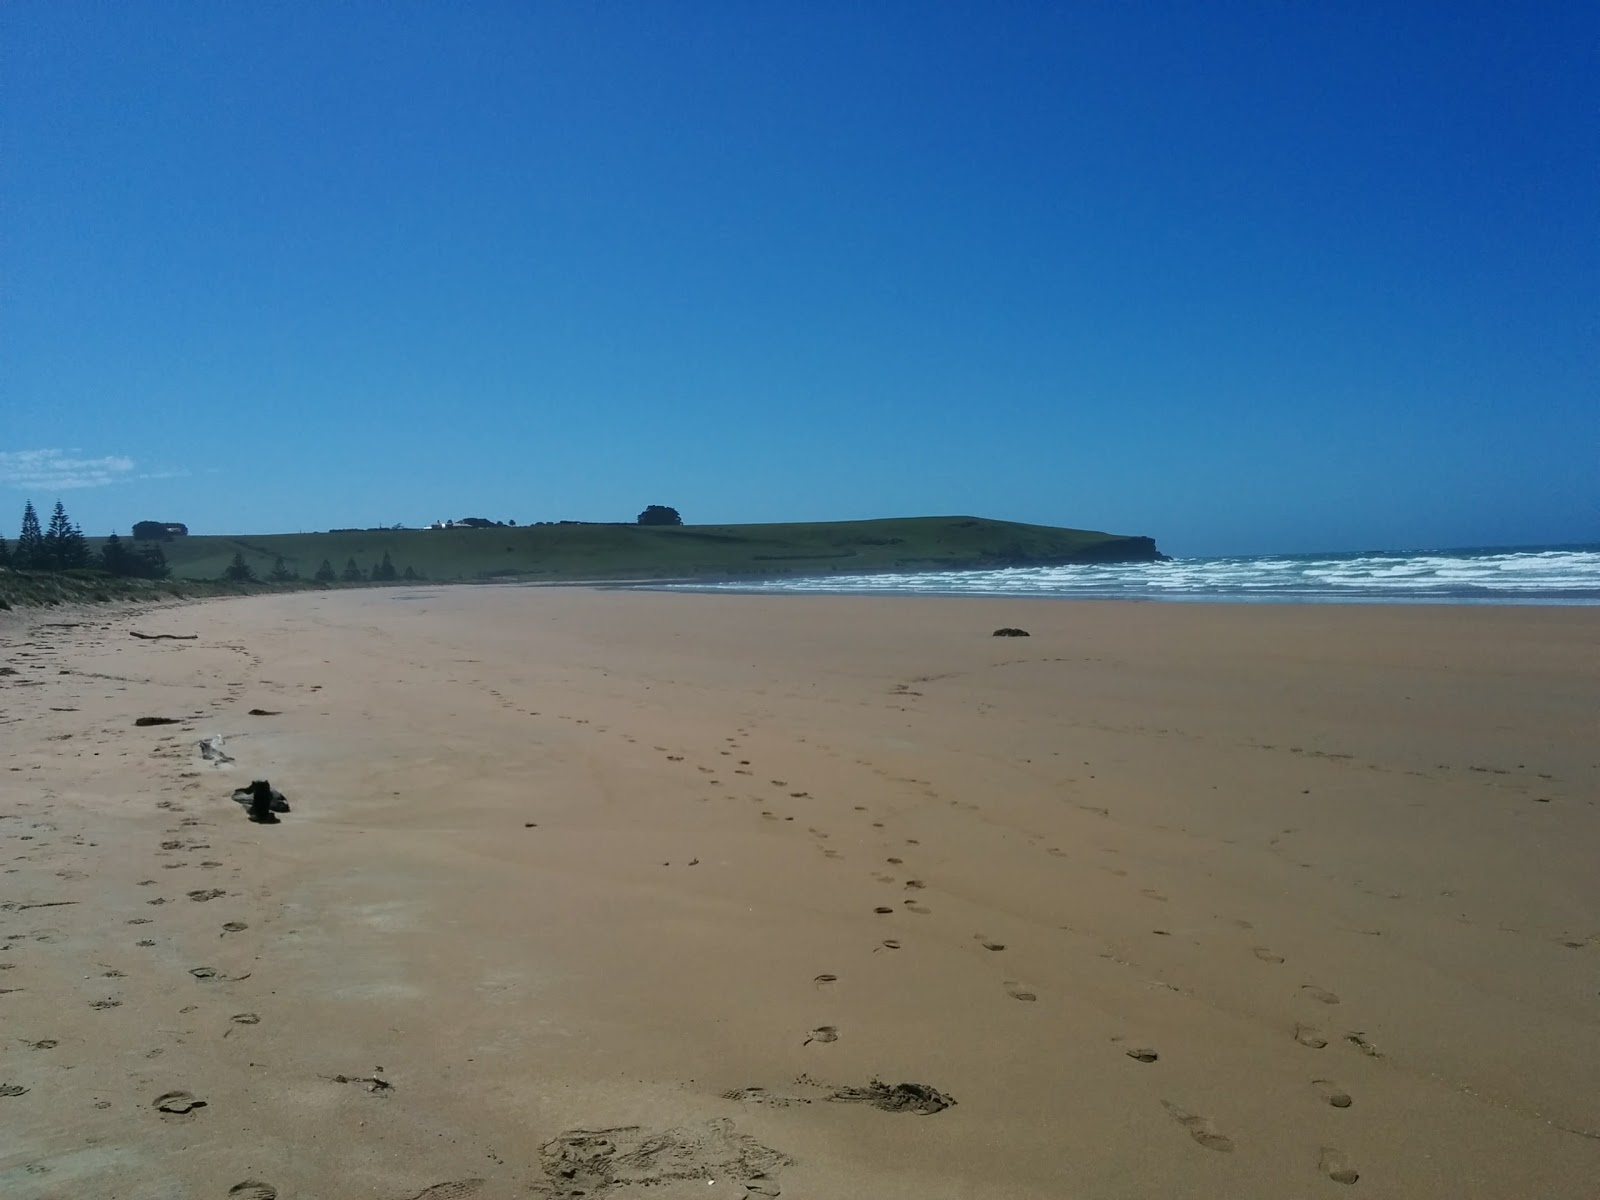 Photo de Godfreys Beach - endroit populaire parmi les connaisseurs de la détente